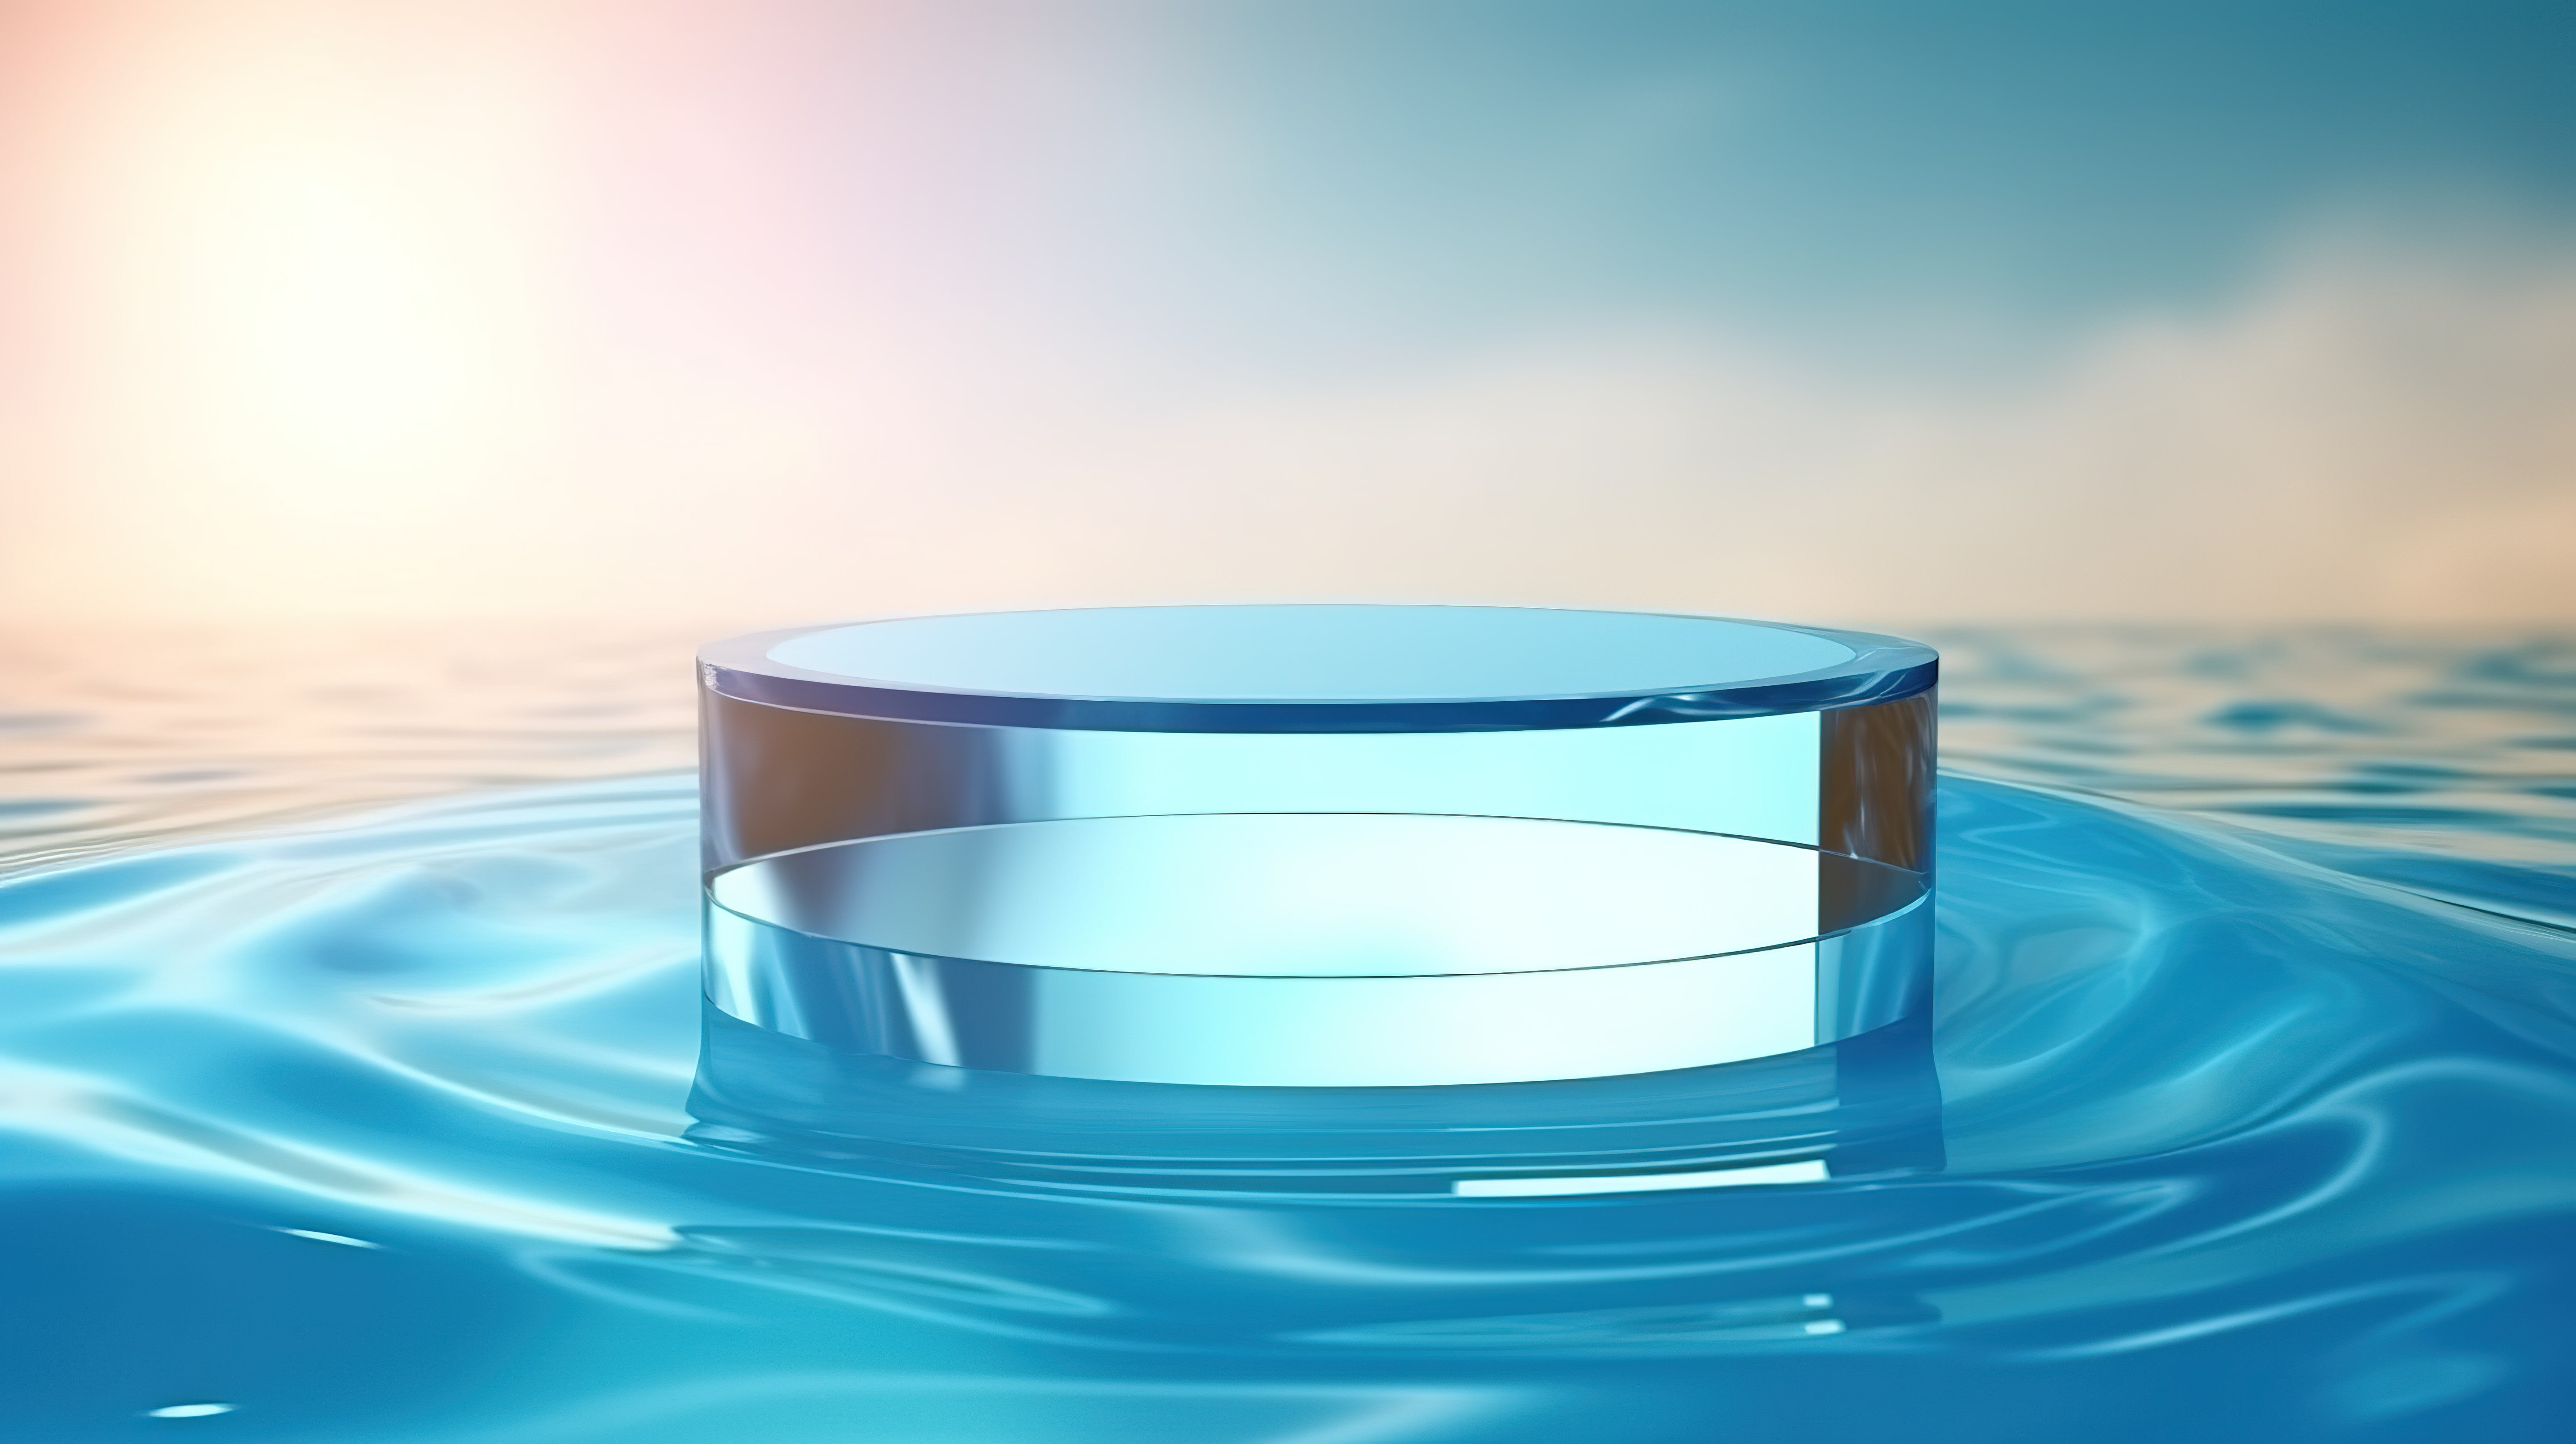 3d 渲染的圆形讲台，阳光照射下水晶般清澈的水背景图片